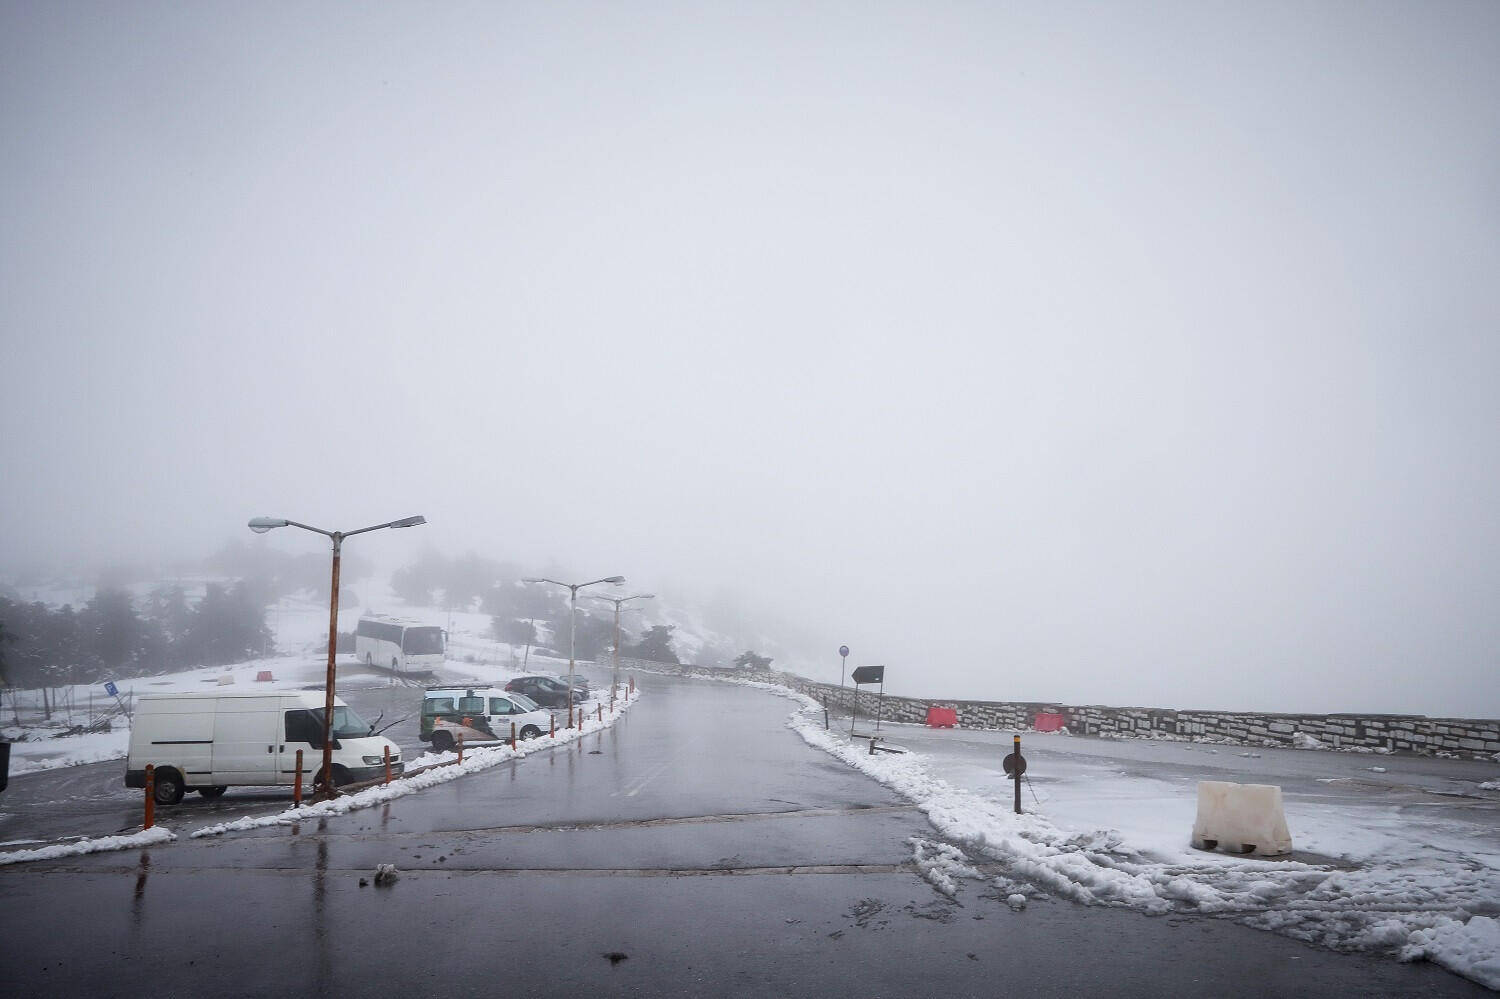 Διακόπηκε λόγω χιονόπτωσης η κυκλοφορία στη λεωφόρο Πάρνηθας